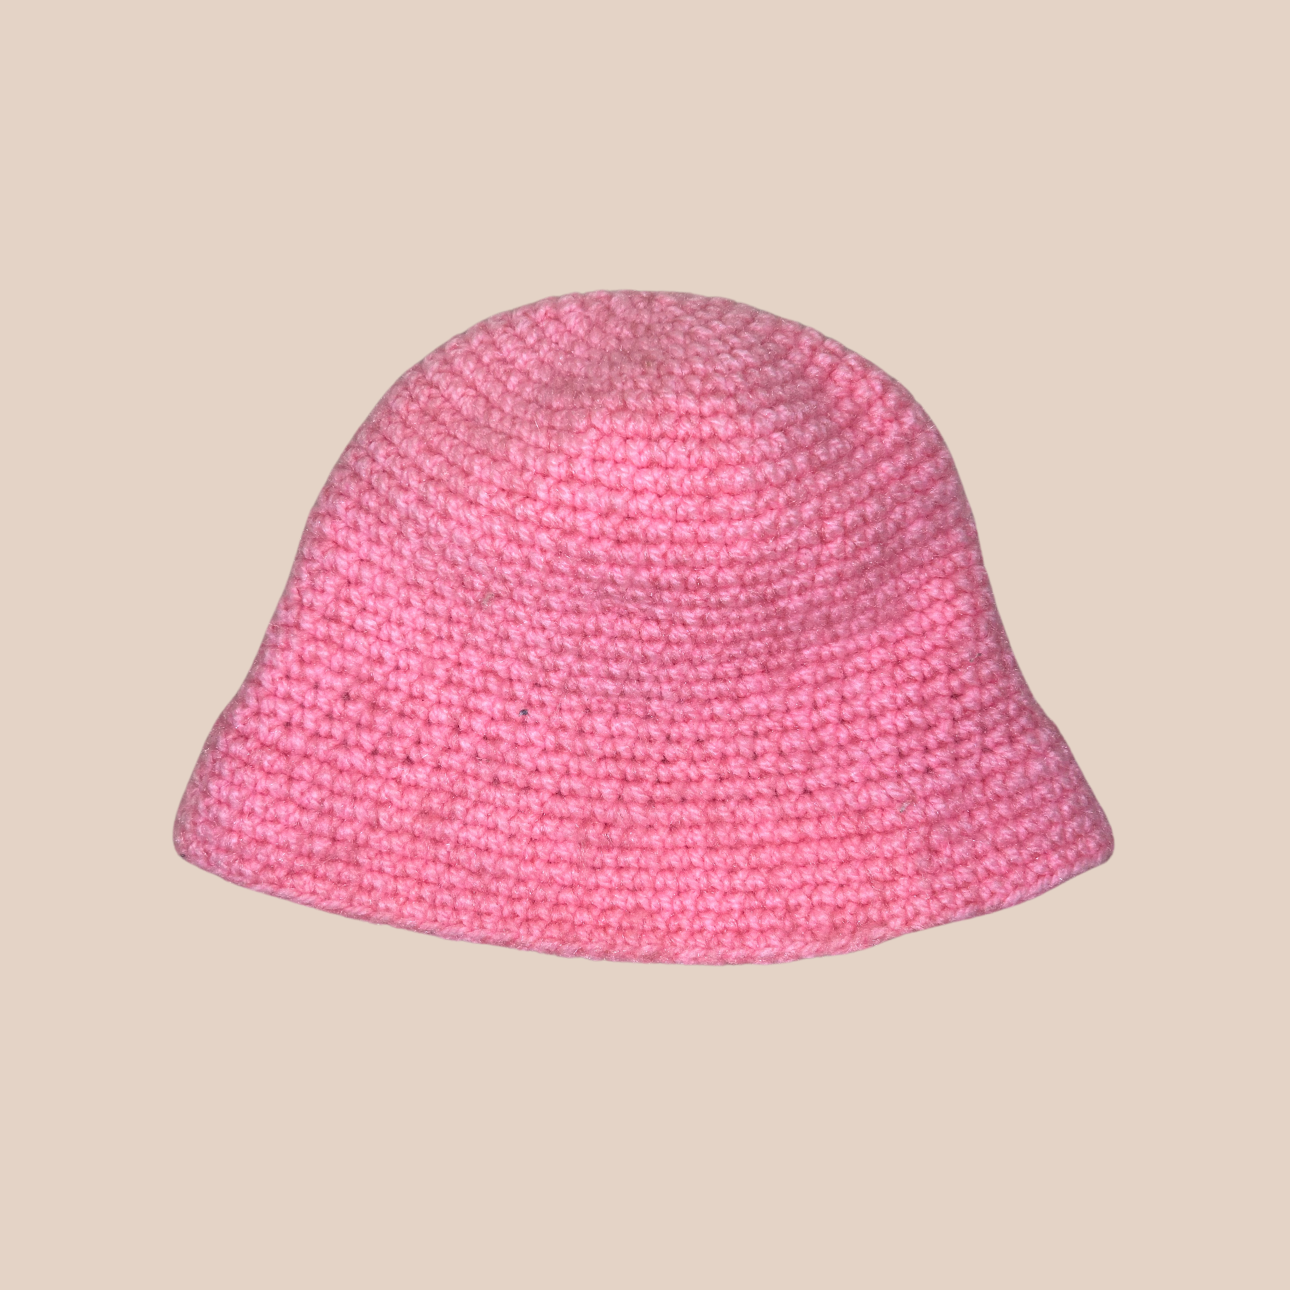 Un bucket hat crocheté en laine et acrylique, arborant un rose vif et audacieux